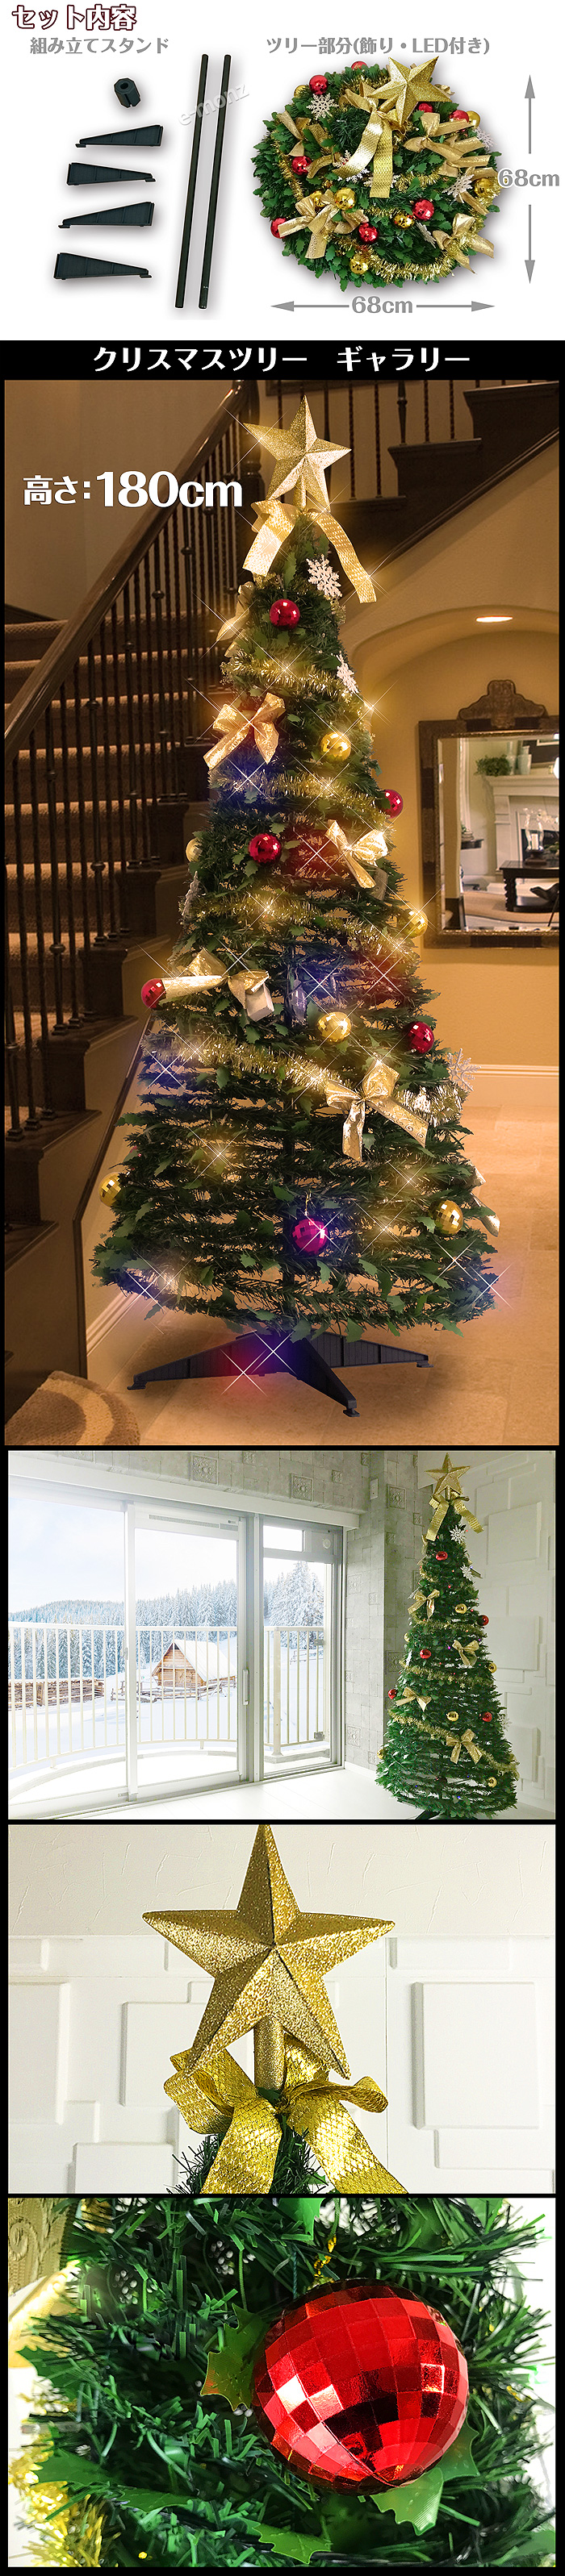 組み立て簡単クリスマスツリー【ワン・ツー・ツリー】LED付属